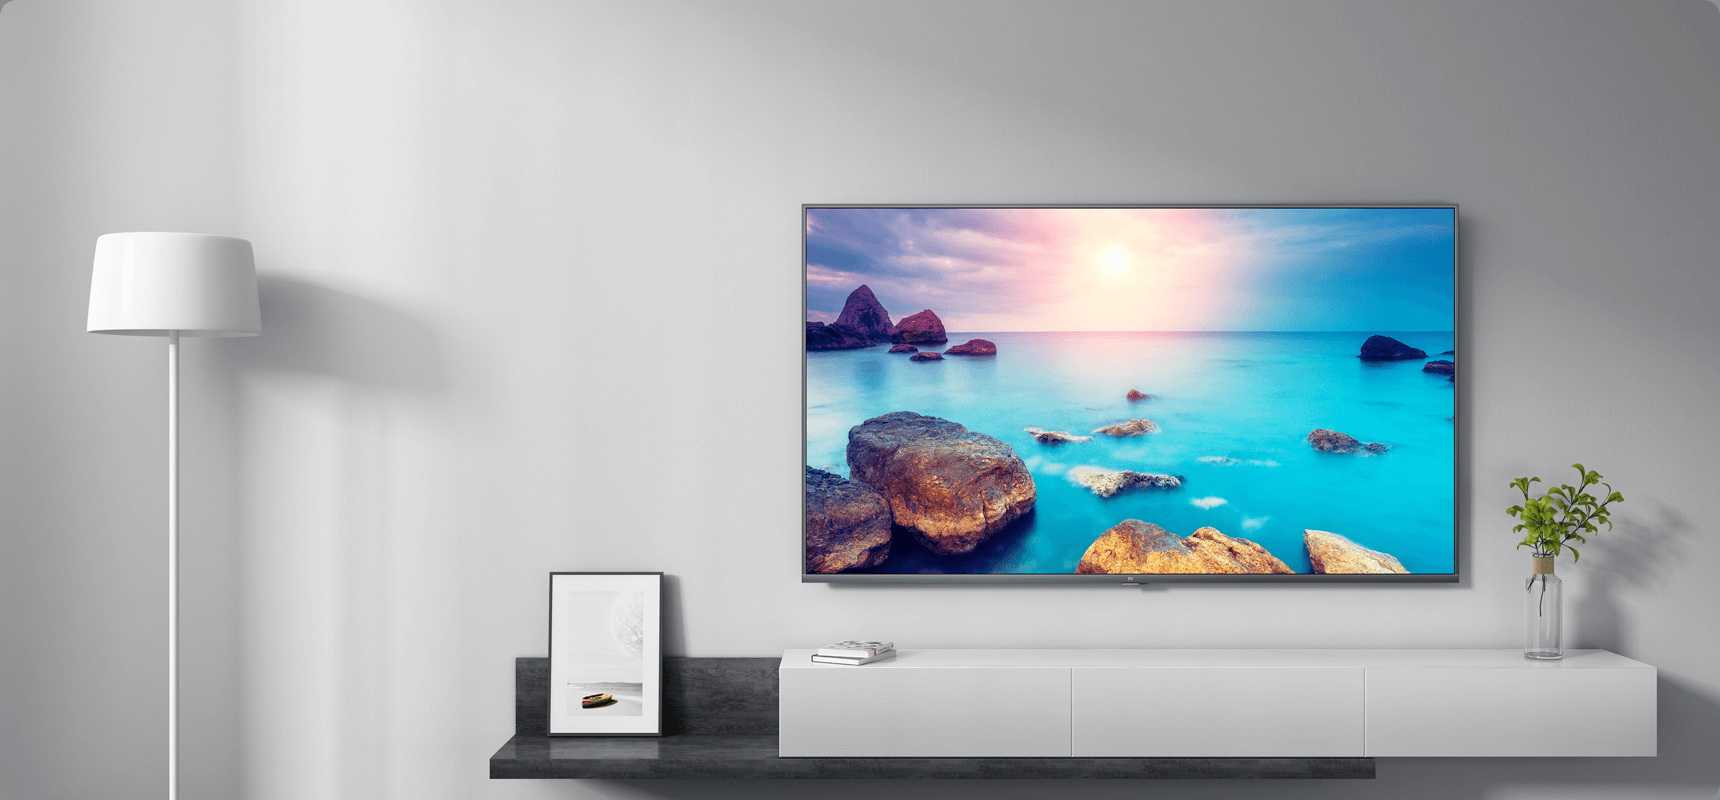 Обзор xiaomi mi led tv 4s 55: сказочно дешевый android-телевизор / мониторы и проекторы